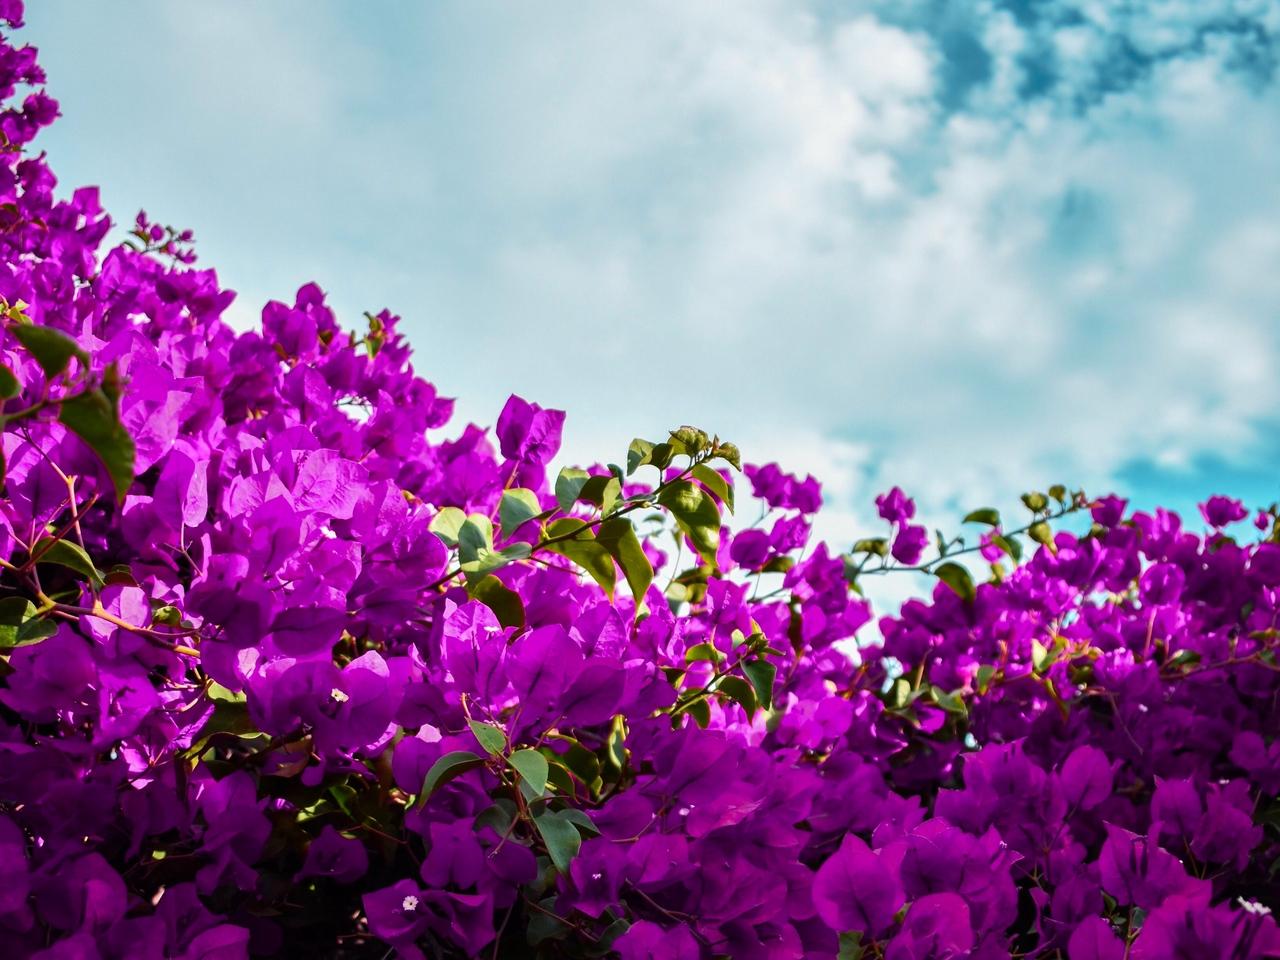 Download wallpaper 1280x960 bougainvillea, flowers, purple